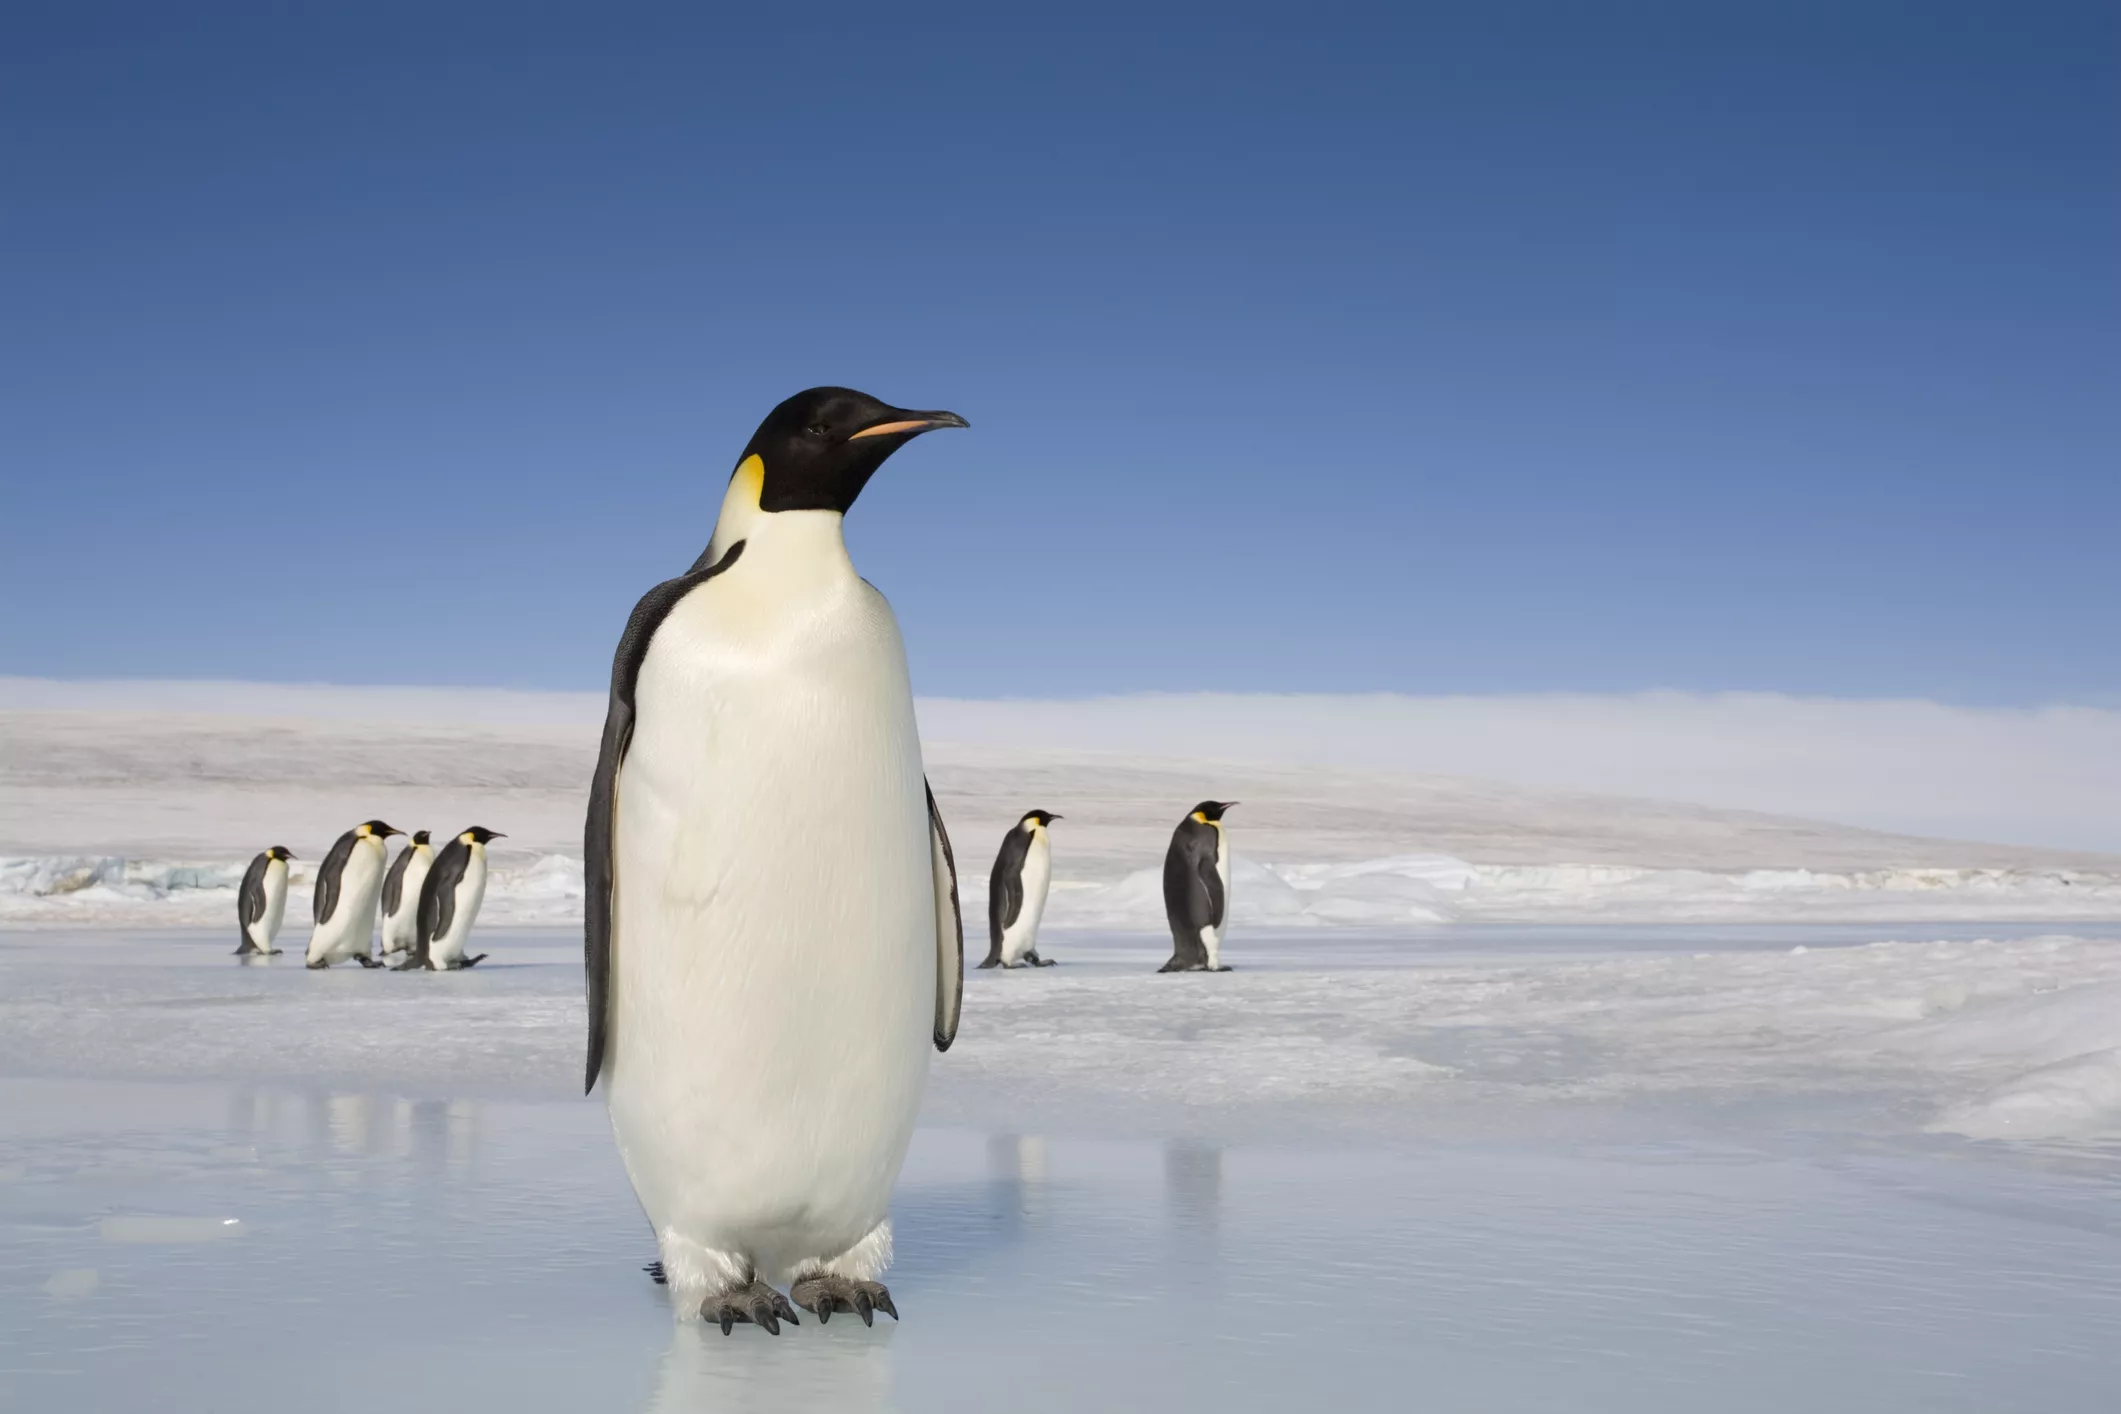 Emperor penguins on ice in Antarctica.